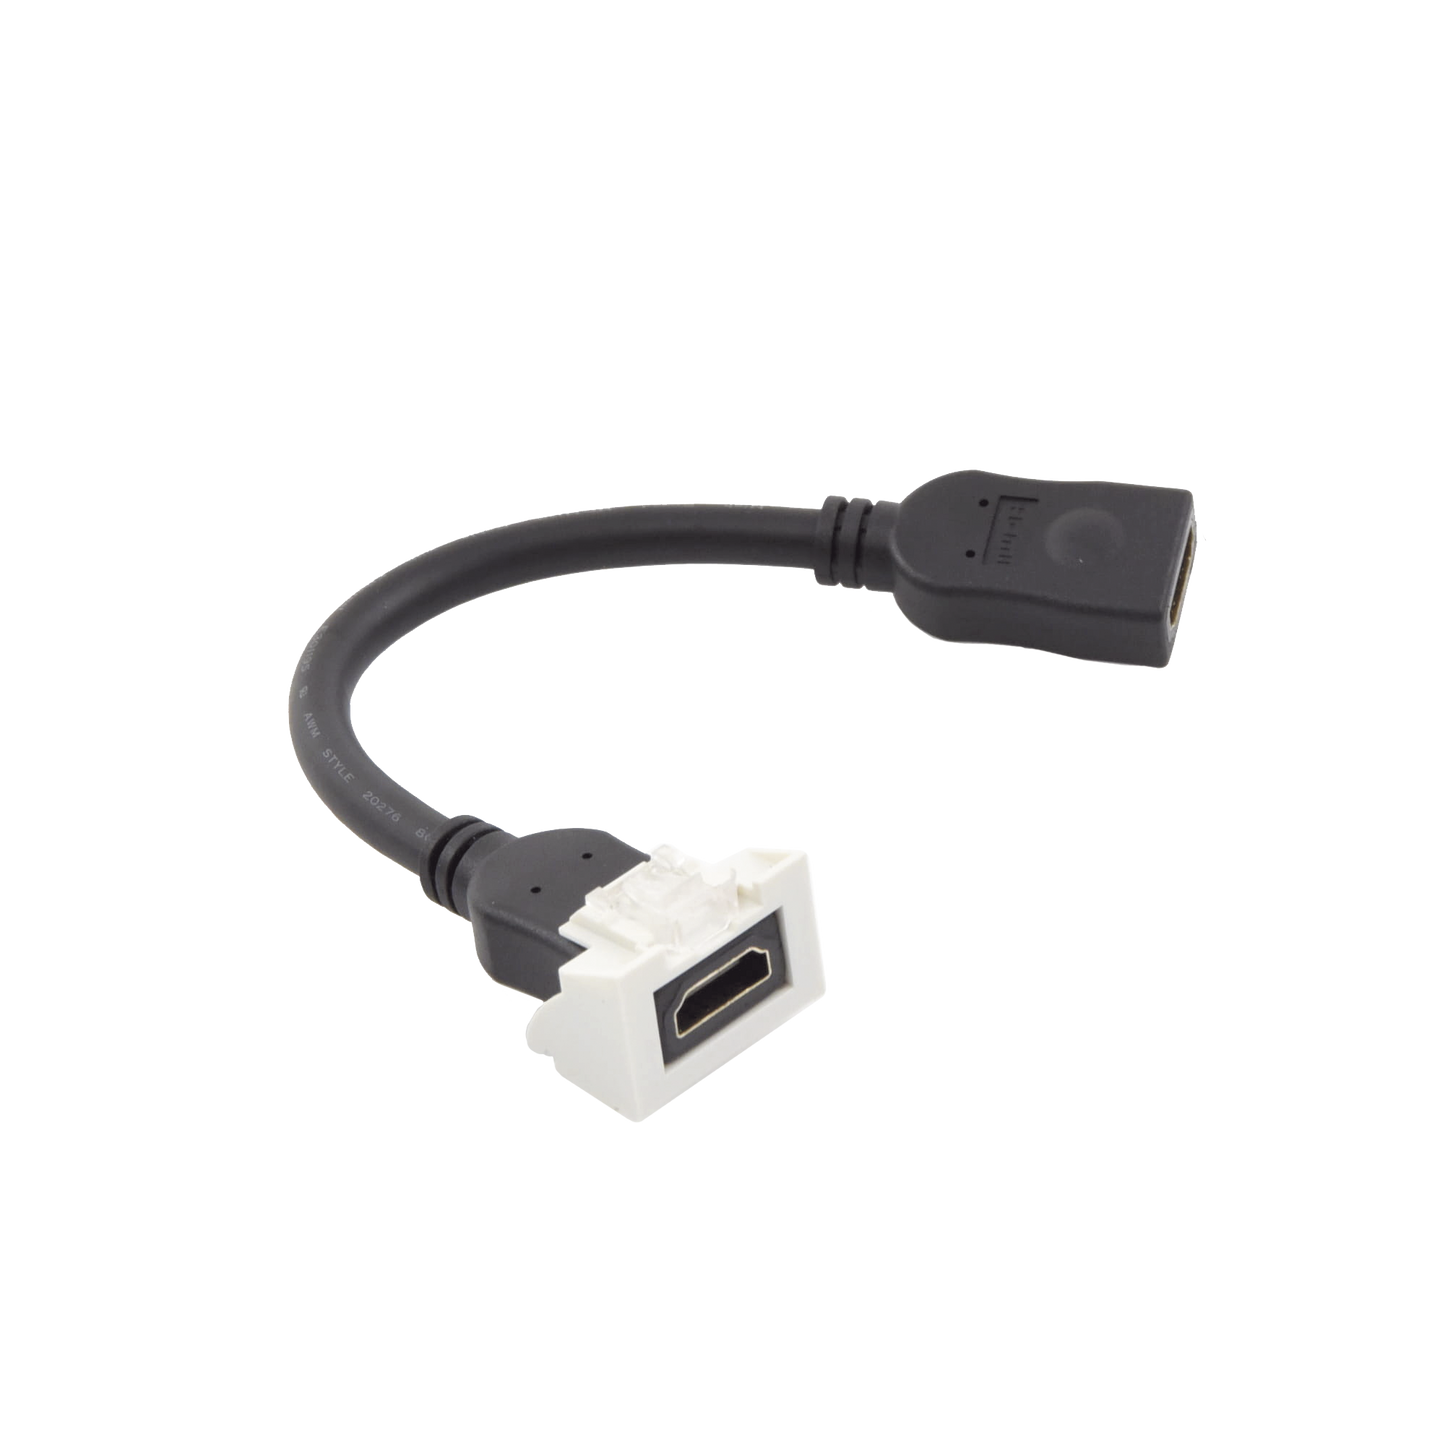 Adaptador HDMI con Pigtail Hembra-Hembra, Para vídeo 720, 1080p, 4K UHD Compatible con Faceplates MAX Siemon de 2 salidas, Color Blanco